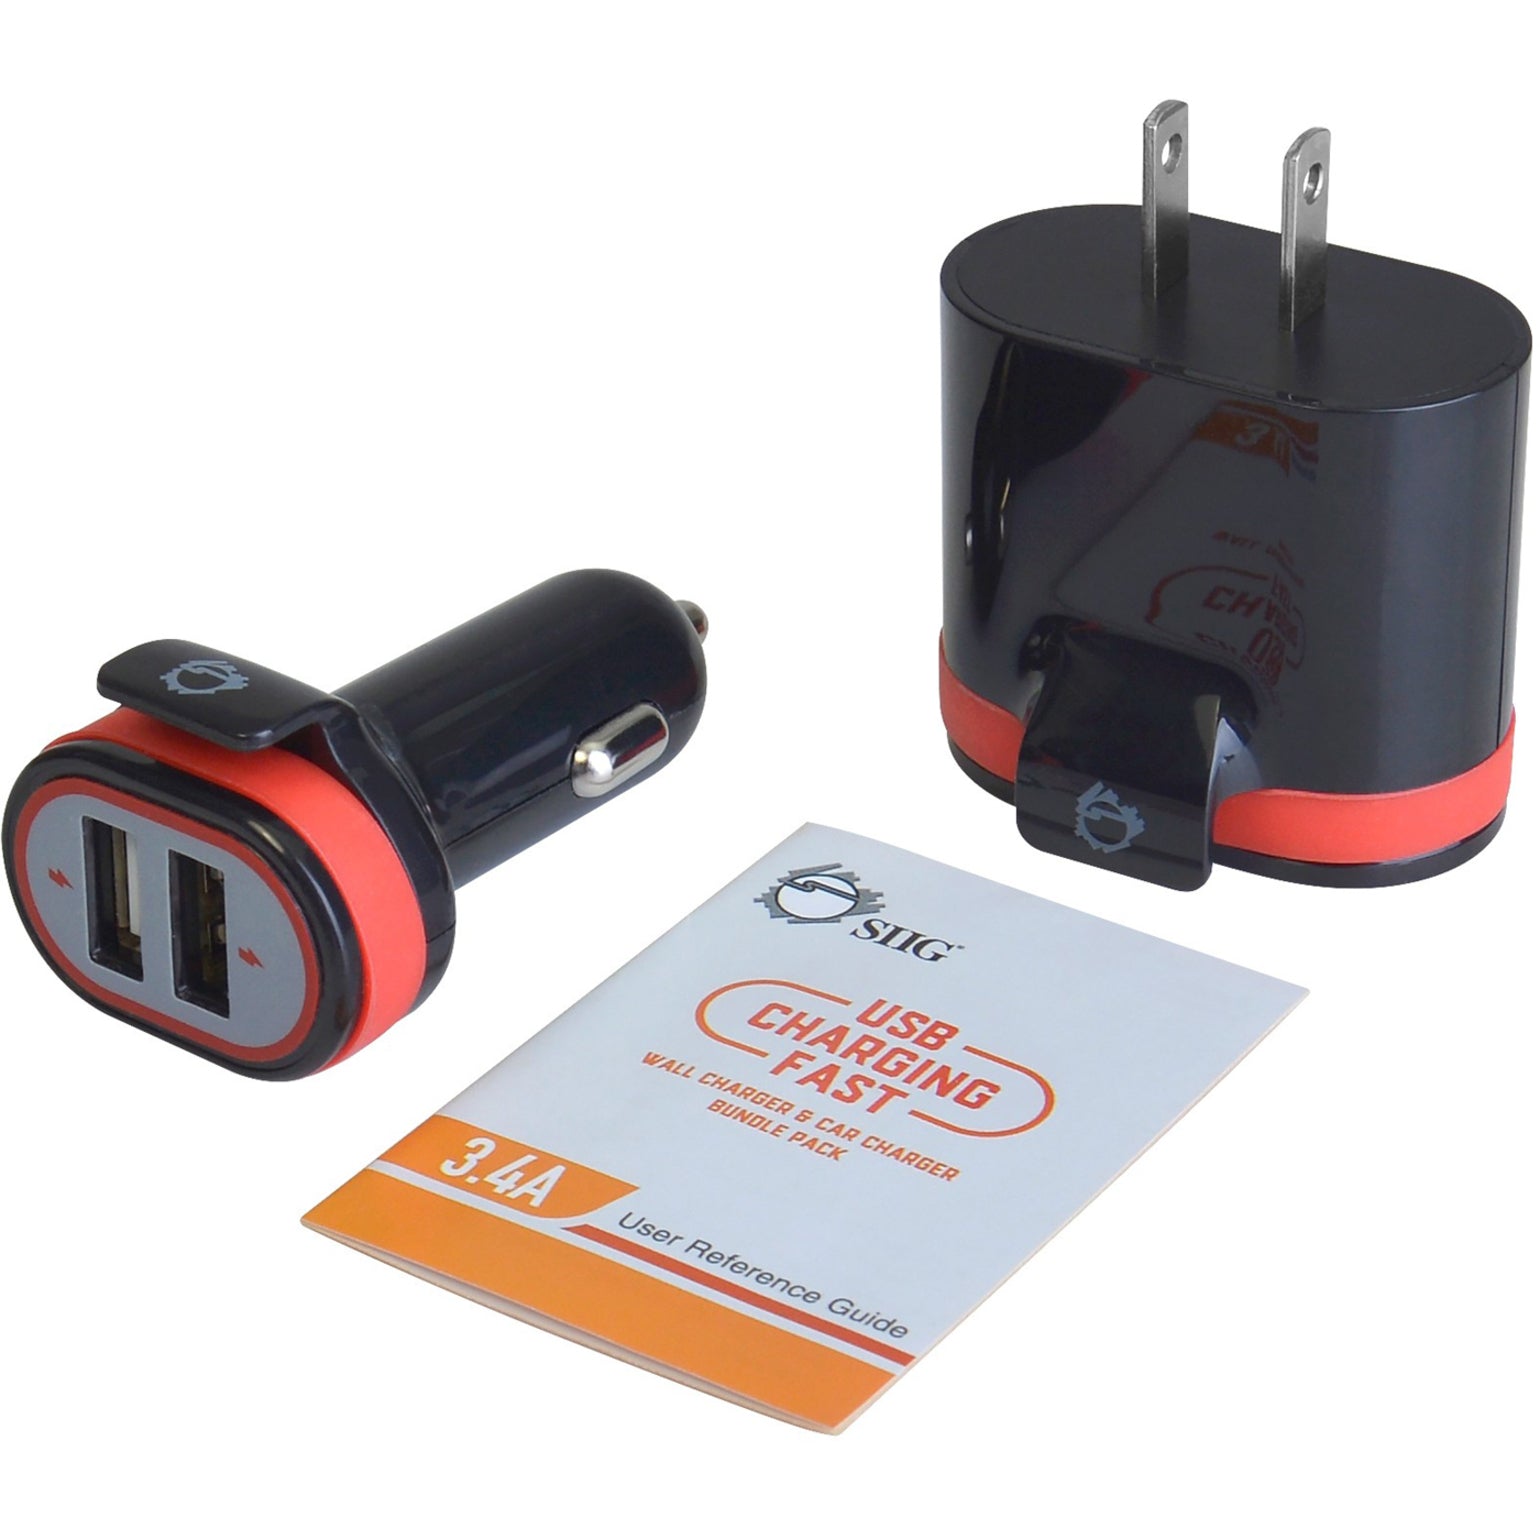 SIIG AC-PW1A12-S1 Schnellladende USB-Wandladegerät & Auto Ladegerät Bundle Pack - Schwarz 34A Ausgang 1 Jahr Garantie